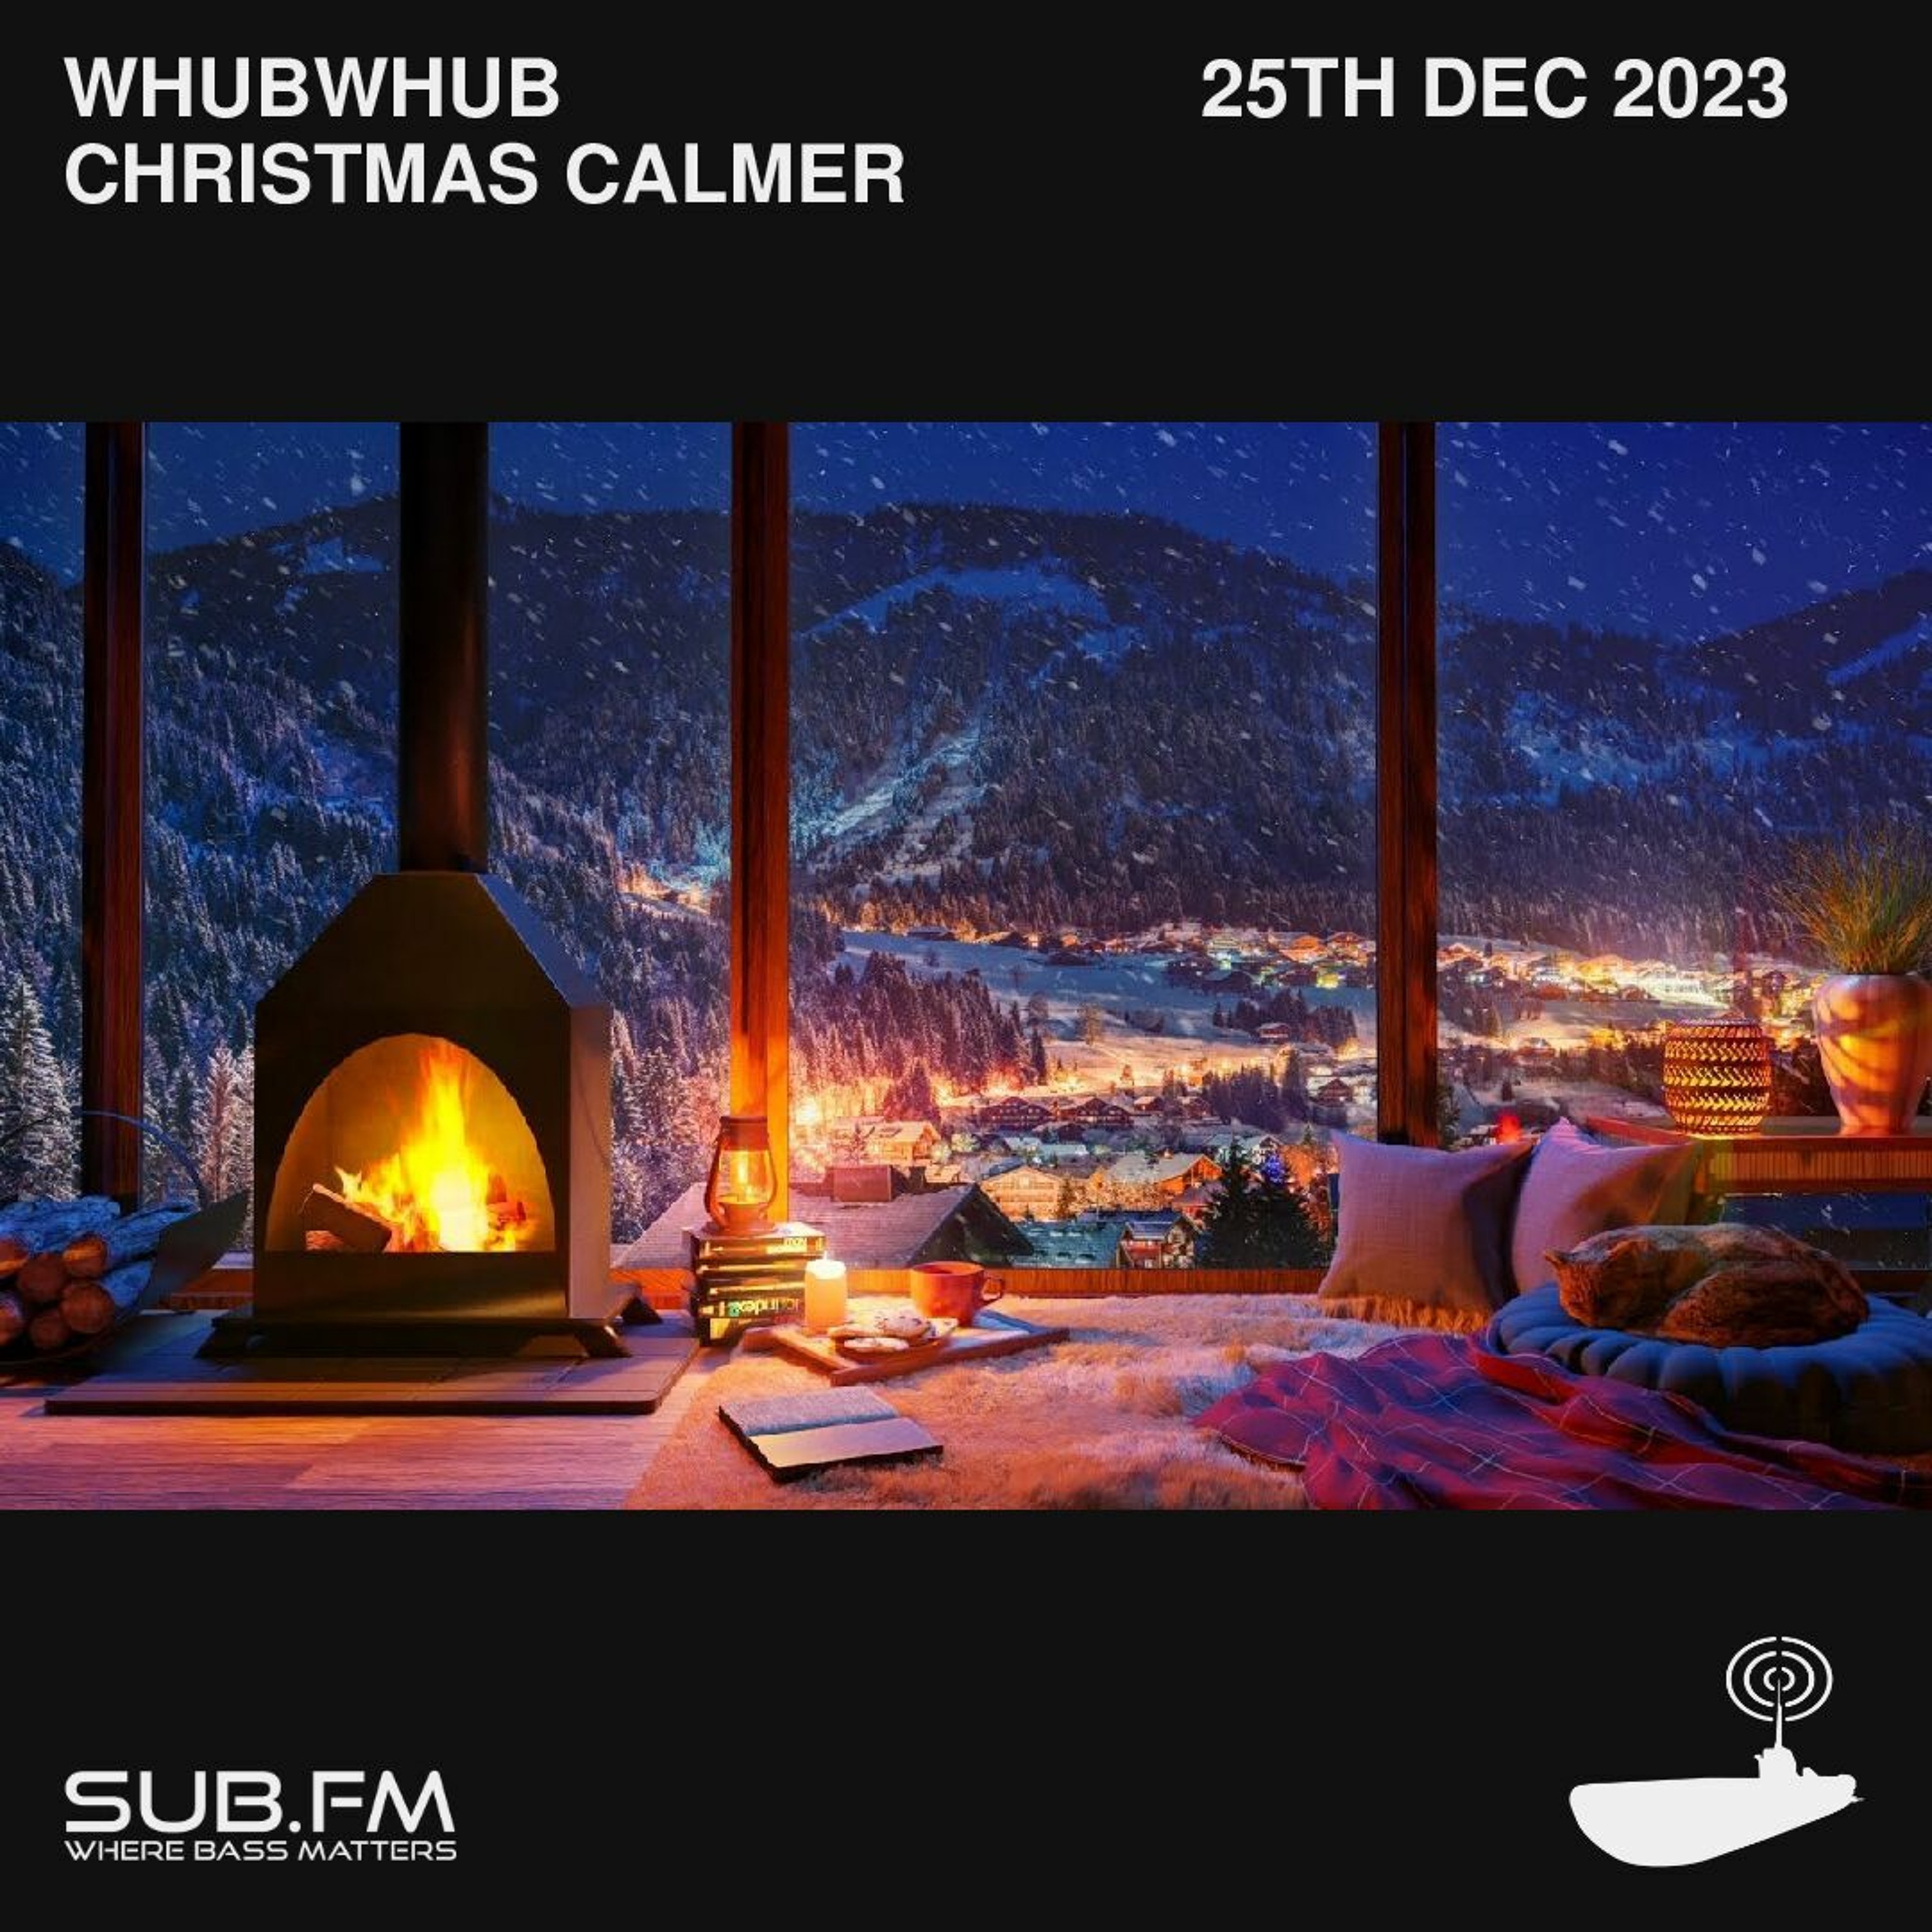 Whubwhub Christmas Calmer - 25 Dec 2023